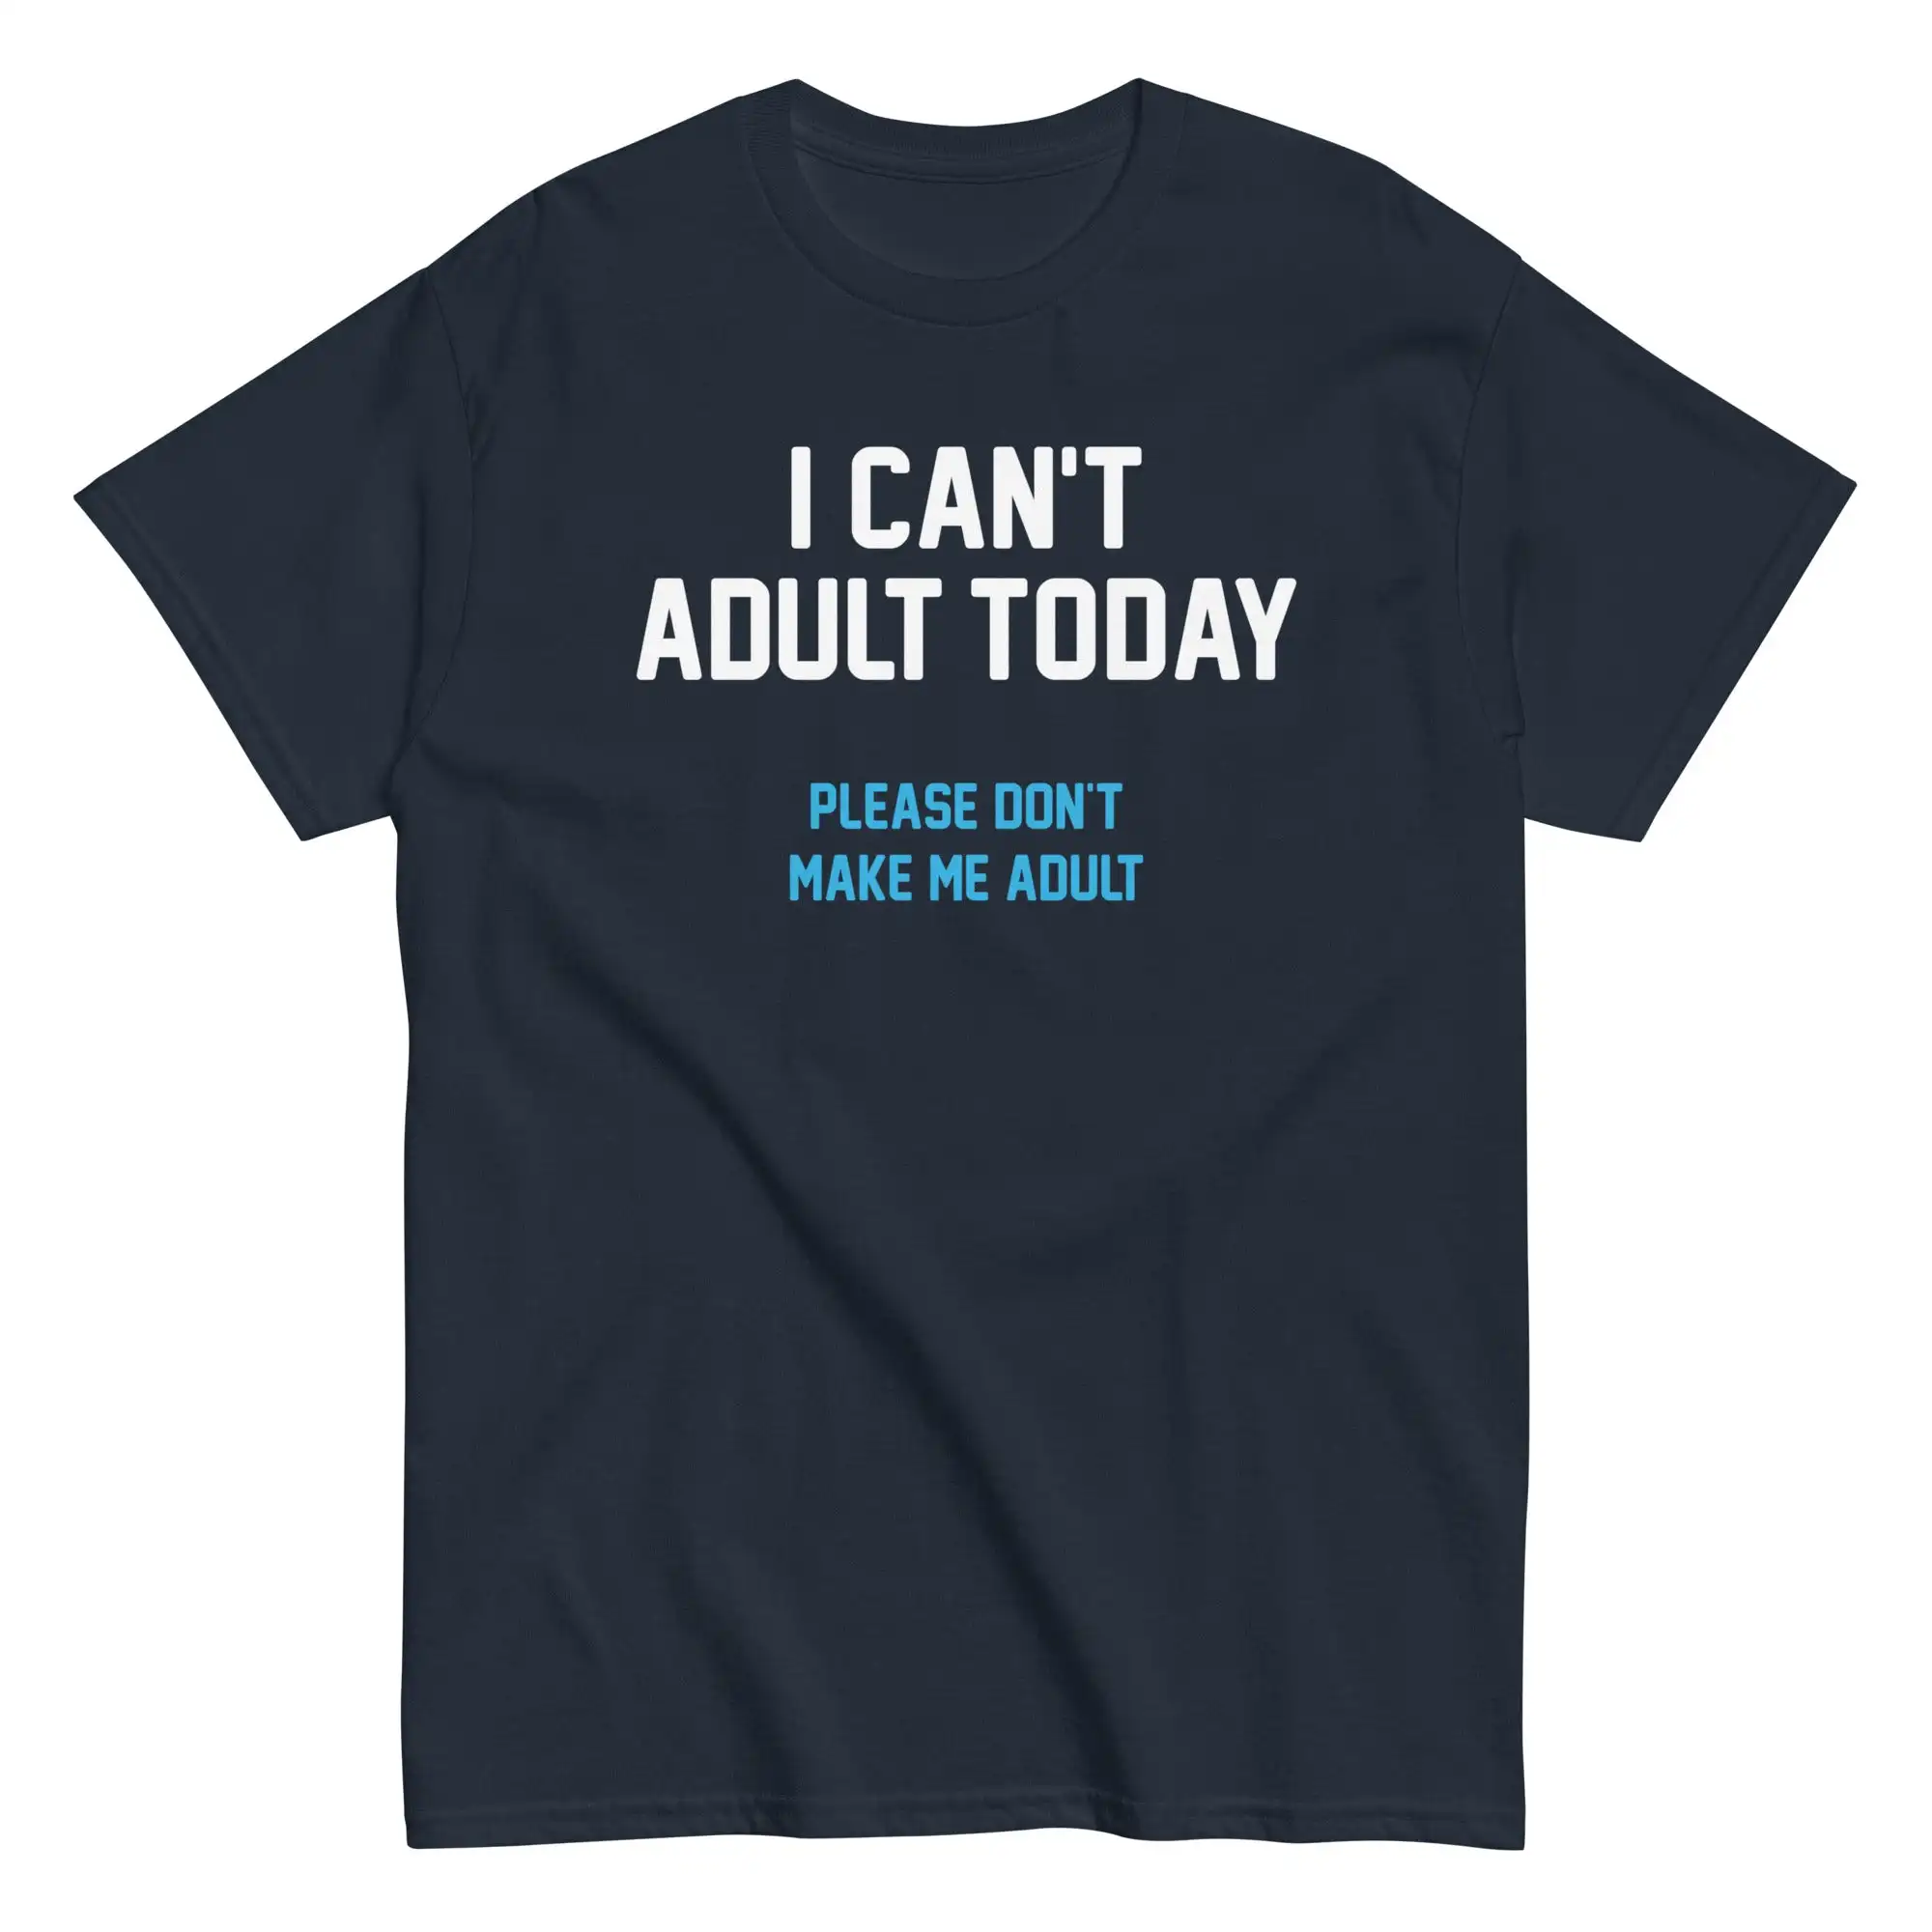 

Футболки с рисунком аниме «Я не могу взрослого сегодня» для мужчин и женщин, футболки с коротким рукавом, Новое поступление, летние футболки унисекс